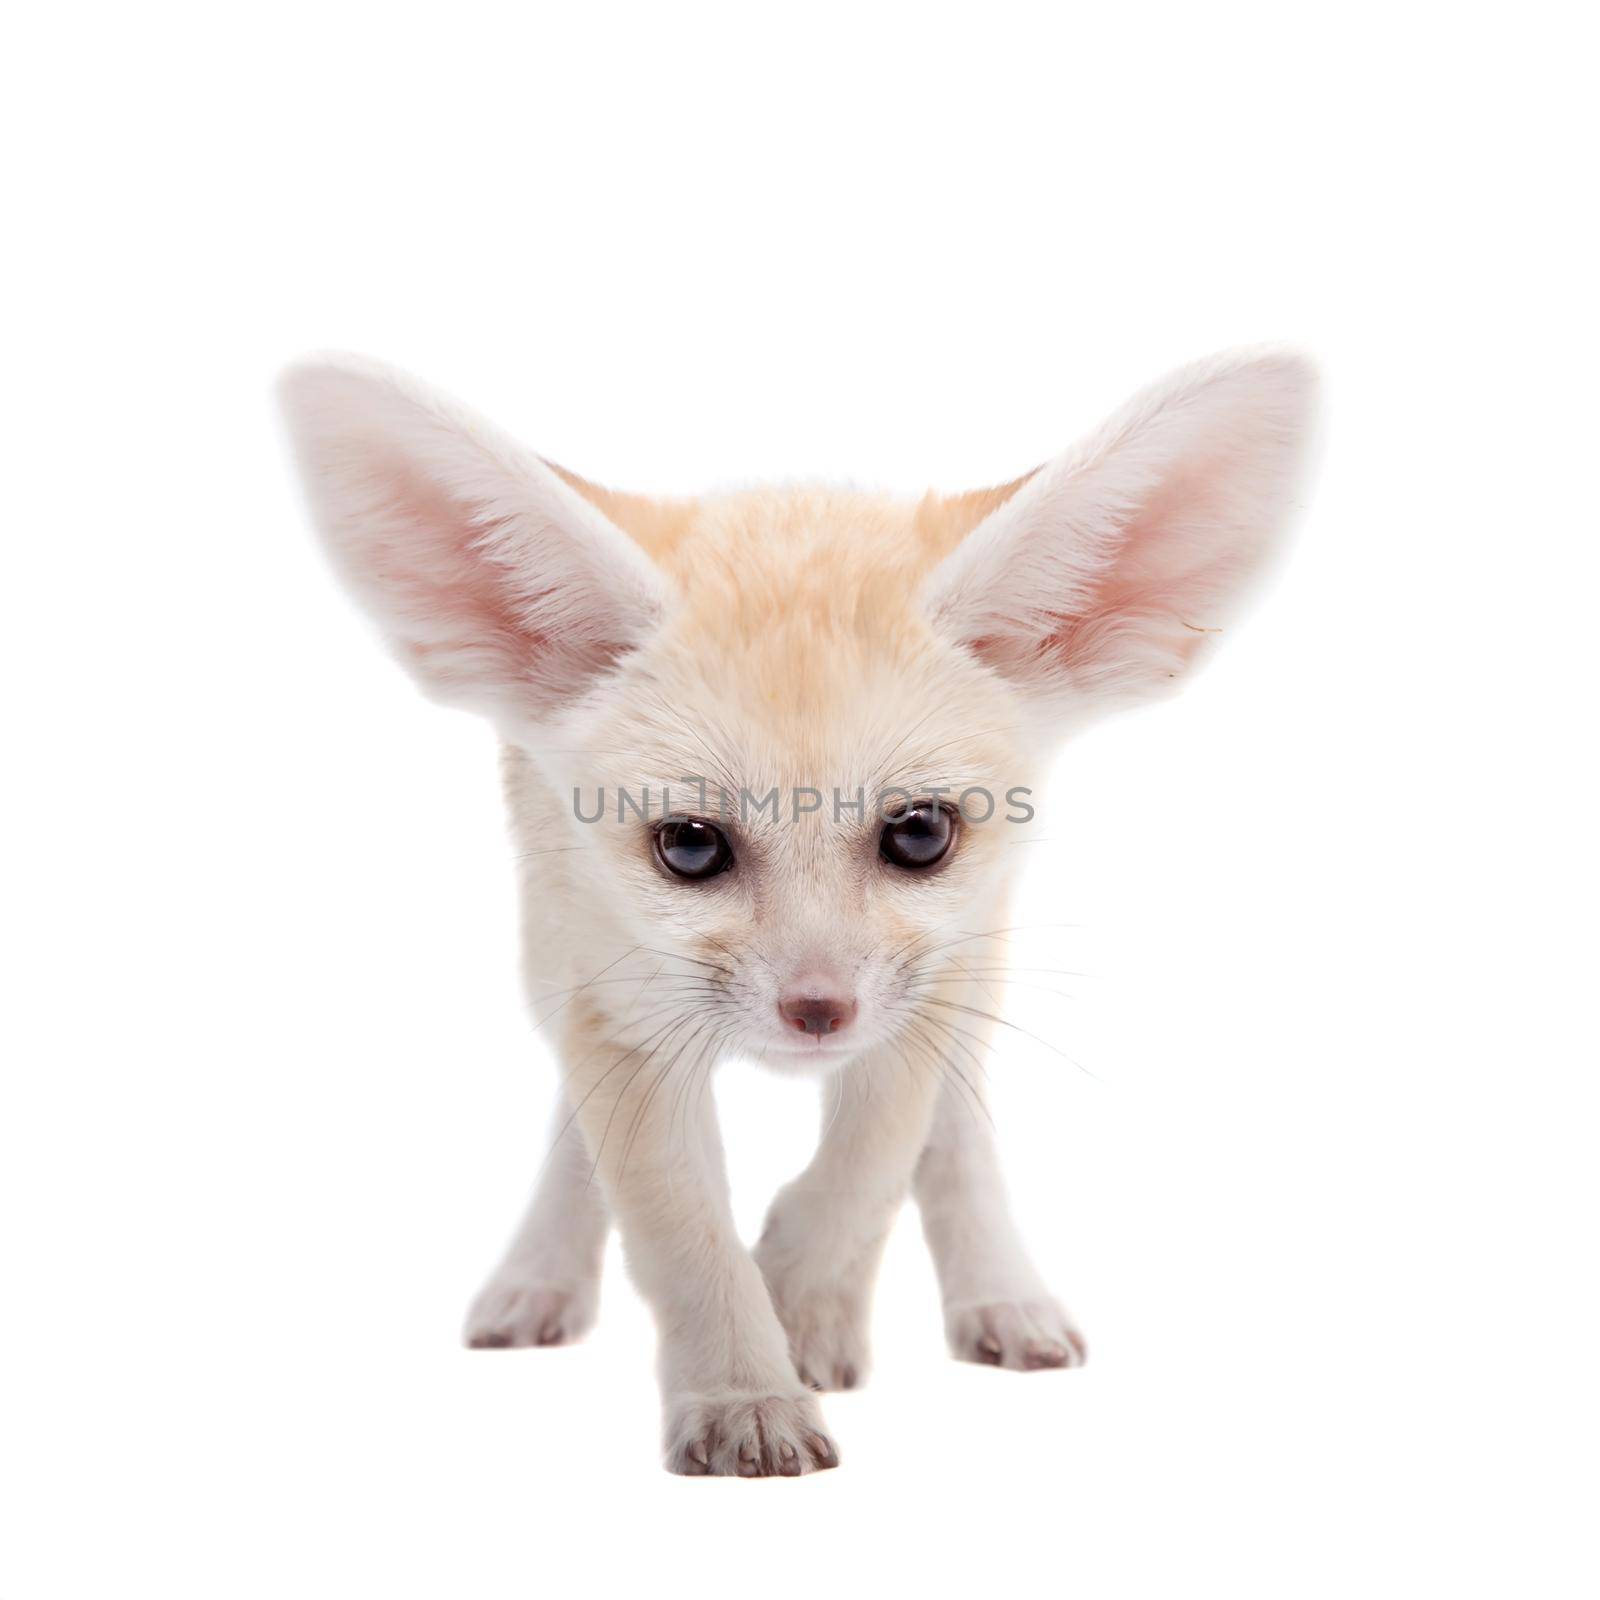 Pretty Fennec fox cub on white background by RosaJay